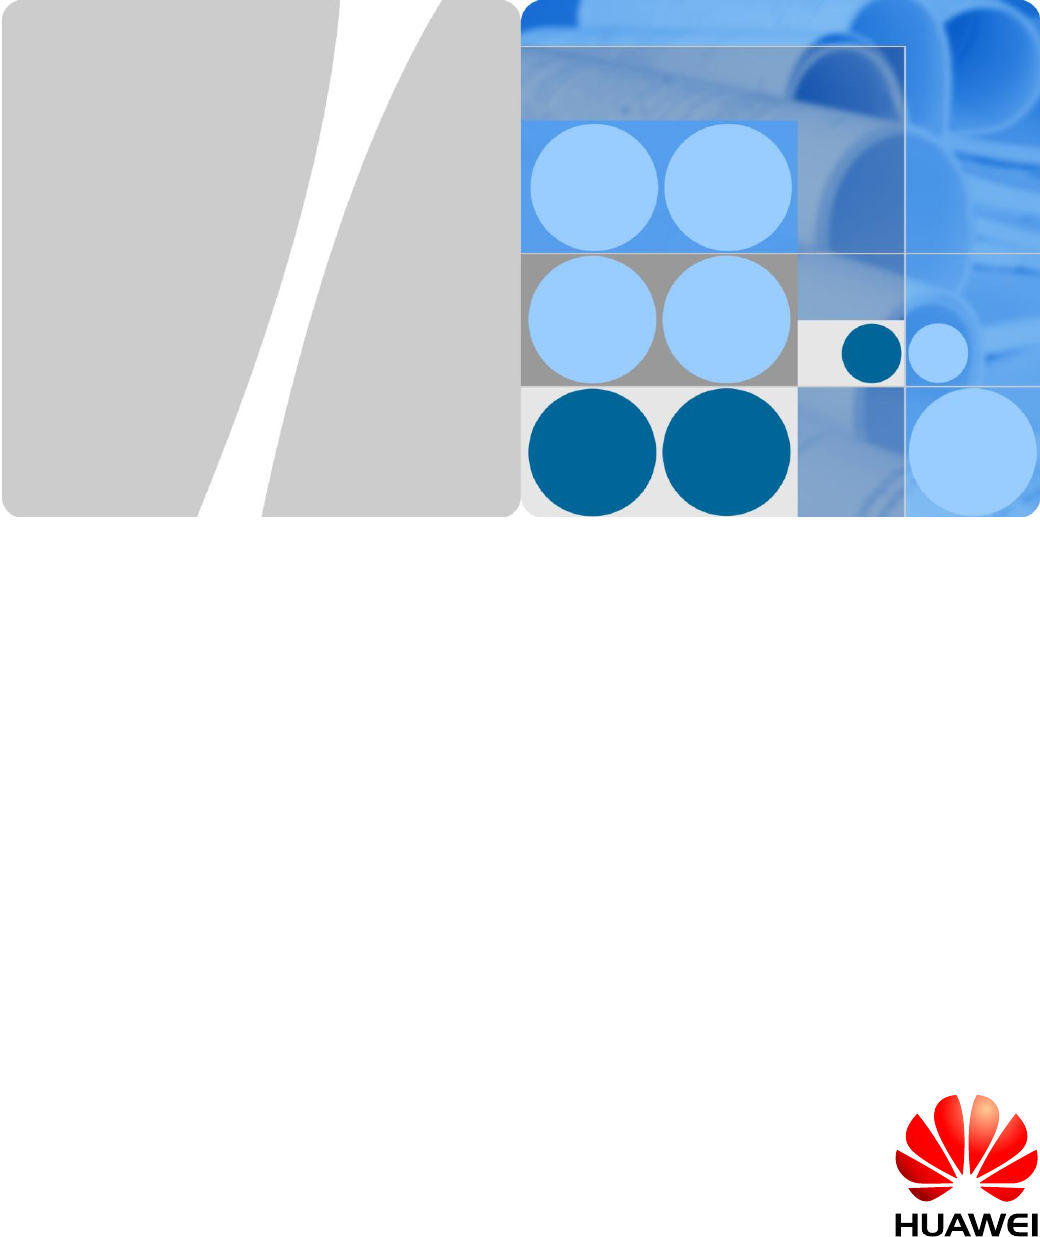 Huawei band 3 pro user manual pdf download